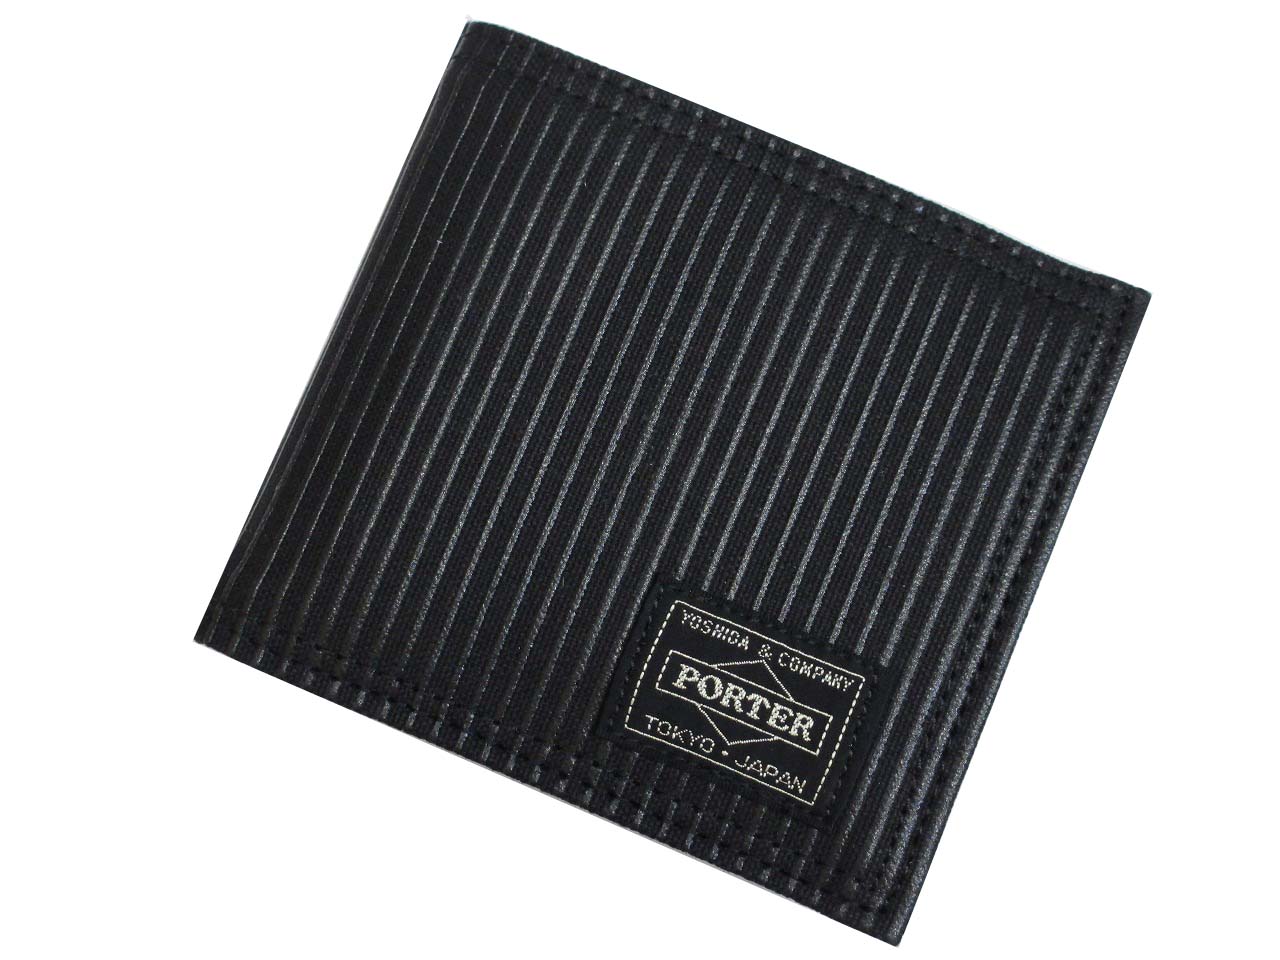 ポーター ドローイング ウォレット 650-08615 吉田カバン PORTER DRAWING 二つ折り財布(小銭入れあり) 日本製